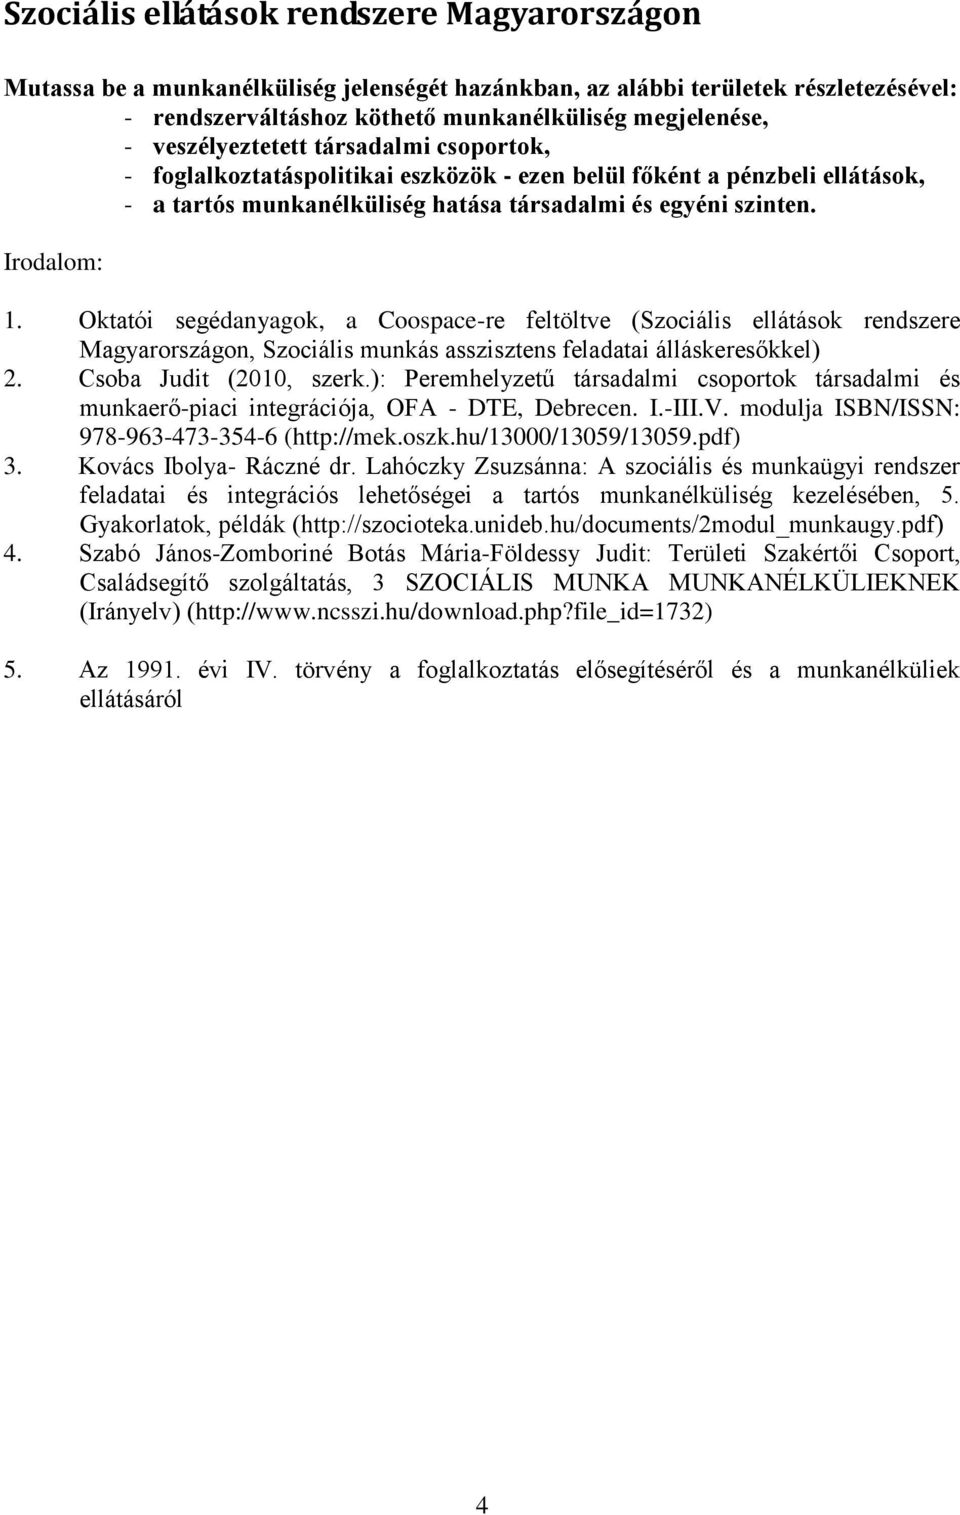 Oktatói segédanyagok, a Coospace-re feltöltve (Szociális ellátások rendszere Magyarországon, Szociális munkás asszisztens feladatai álláskeresőkkel) 2. Csoba Judit (2010, szerk.